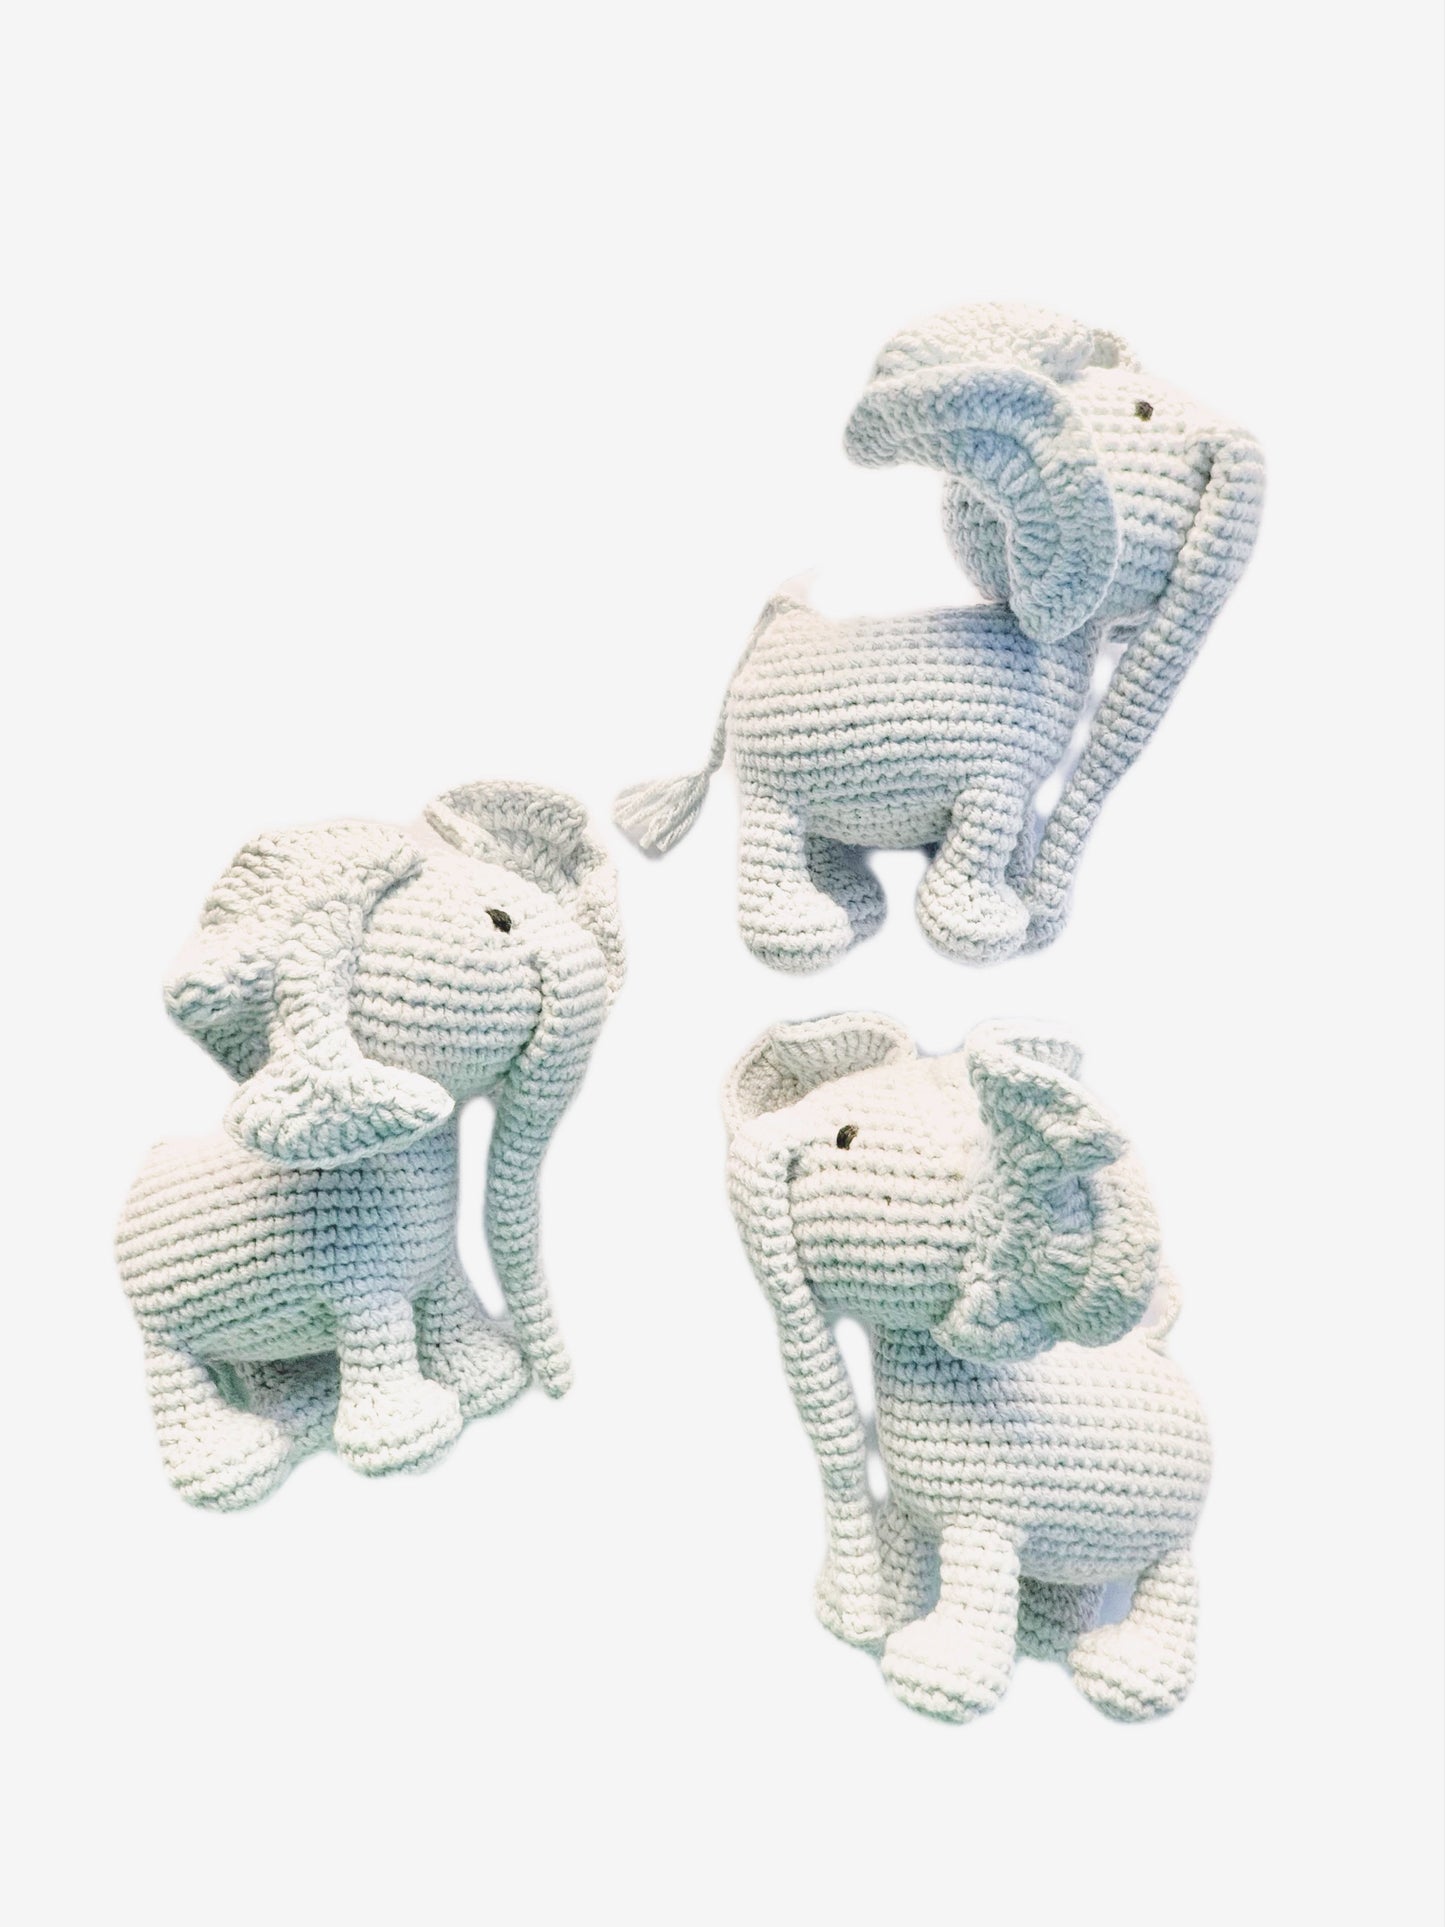 Mobile-sized Elephant Toy 3Stitches   